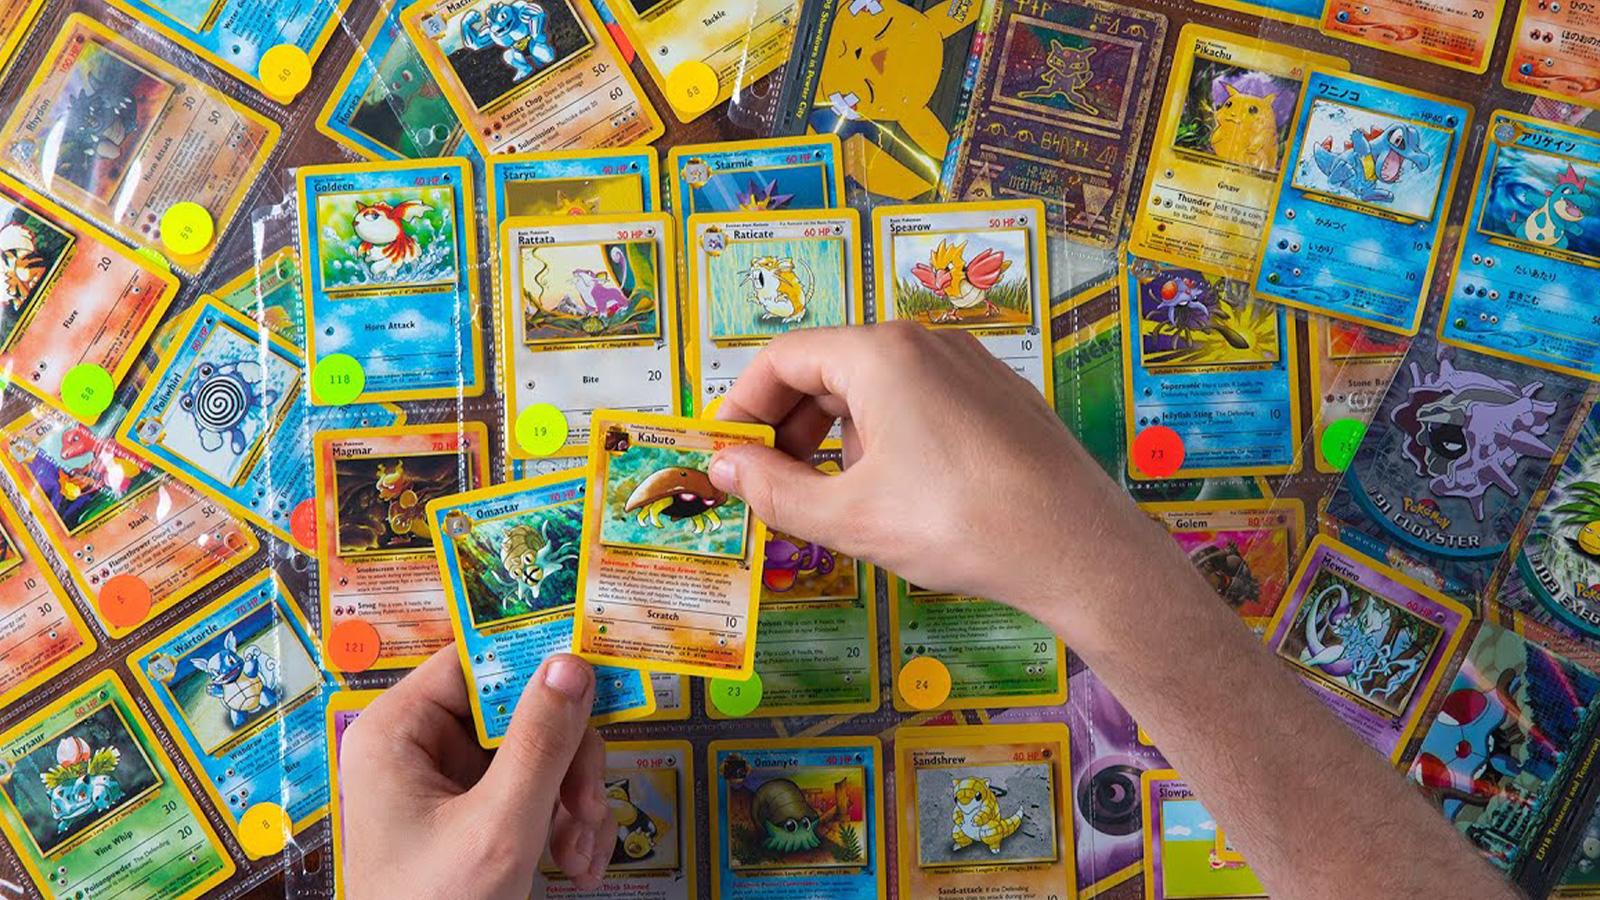 Pokémon TCG Card Rarity Explained Properly